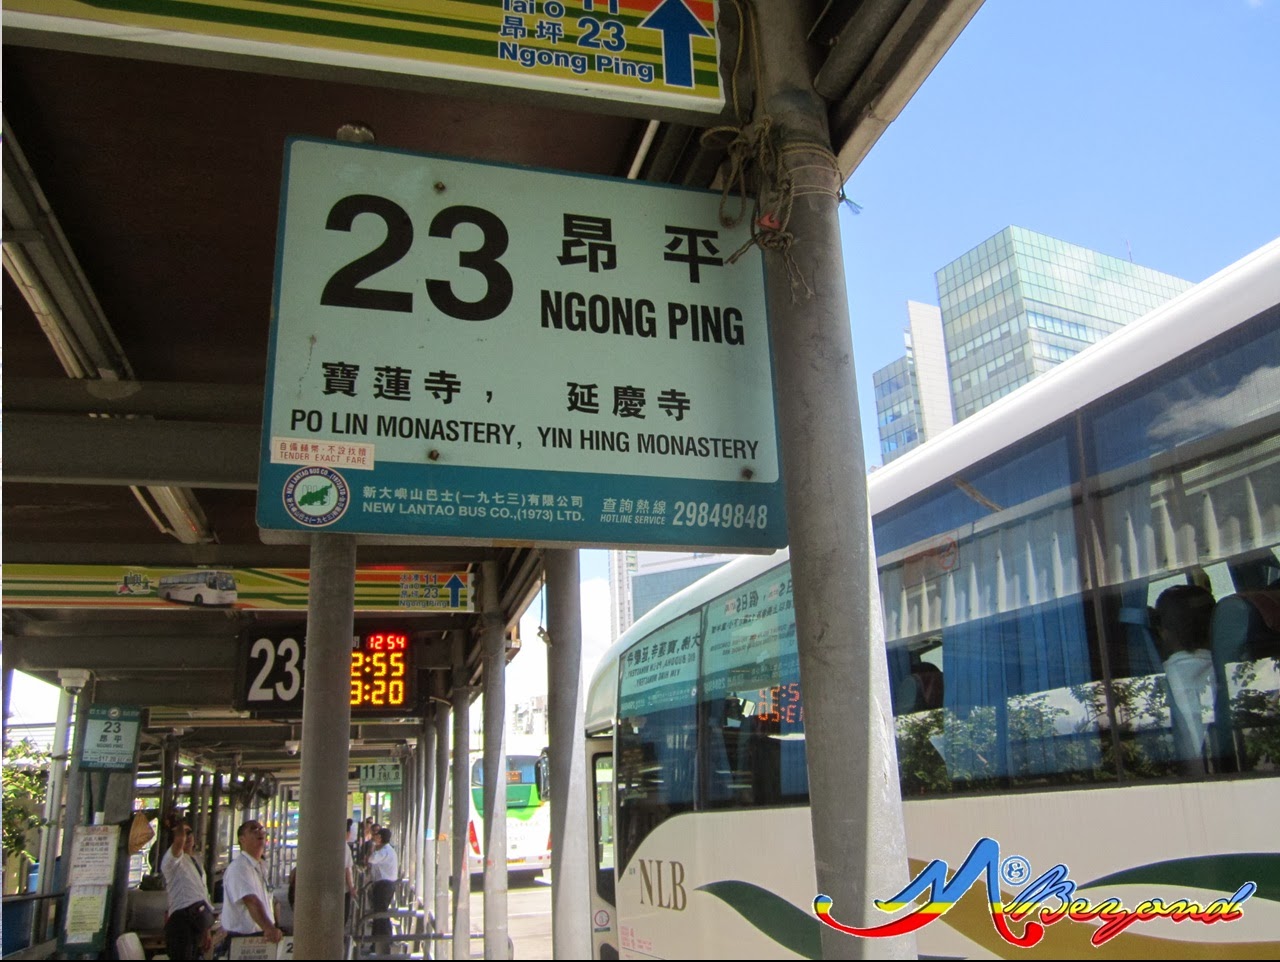 ngong ping village, lantau island, hongkong disneyland, hongkong trip, hongkong blog, hongkong-macau trip, hongkong itinerary, hongkong tourist attractions, where to go in hongkong, hongkong tourist spot